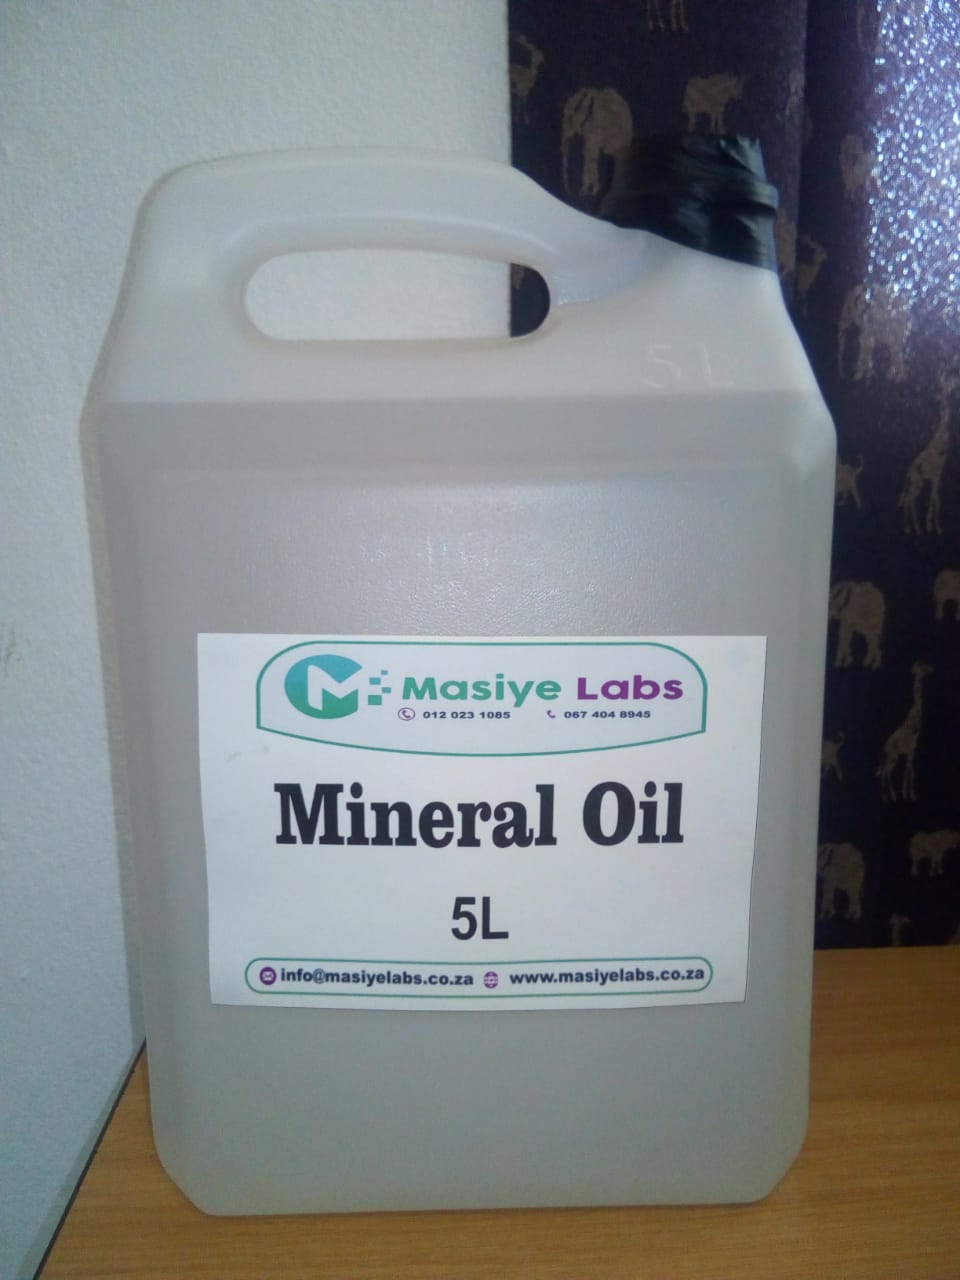 Paraffin Oil, White, Laboratory Grade, 500 Ml